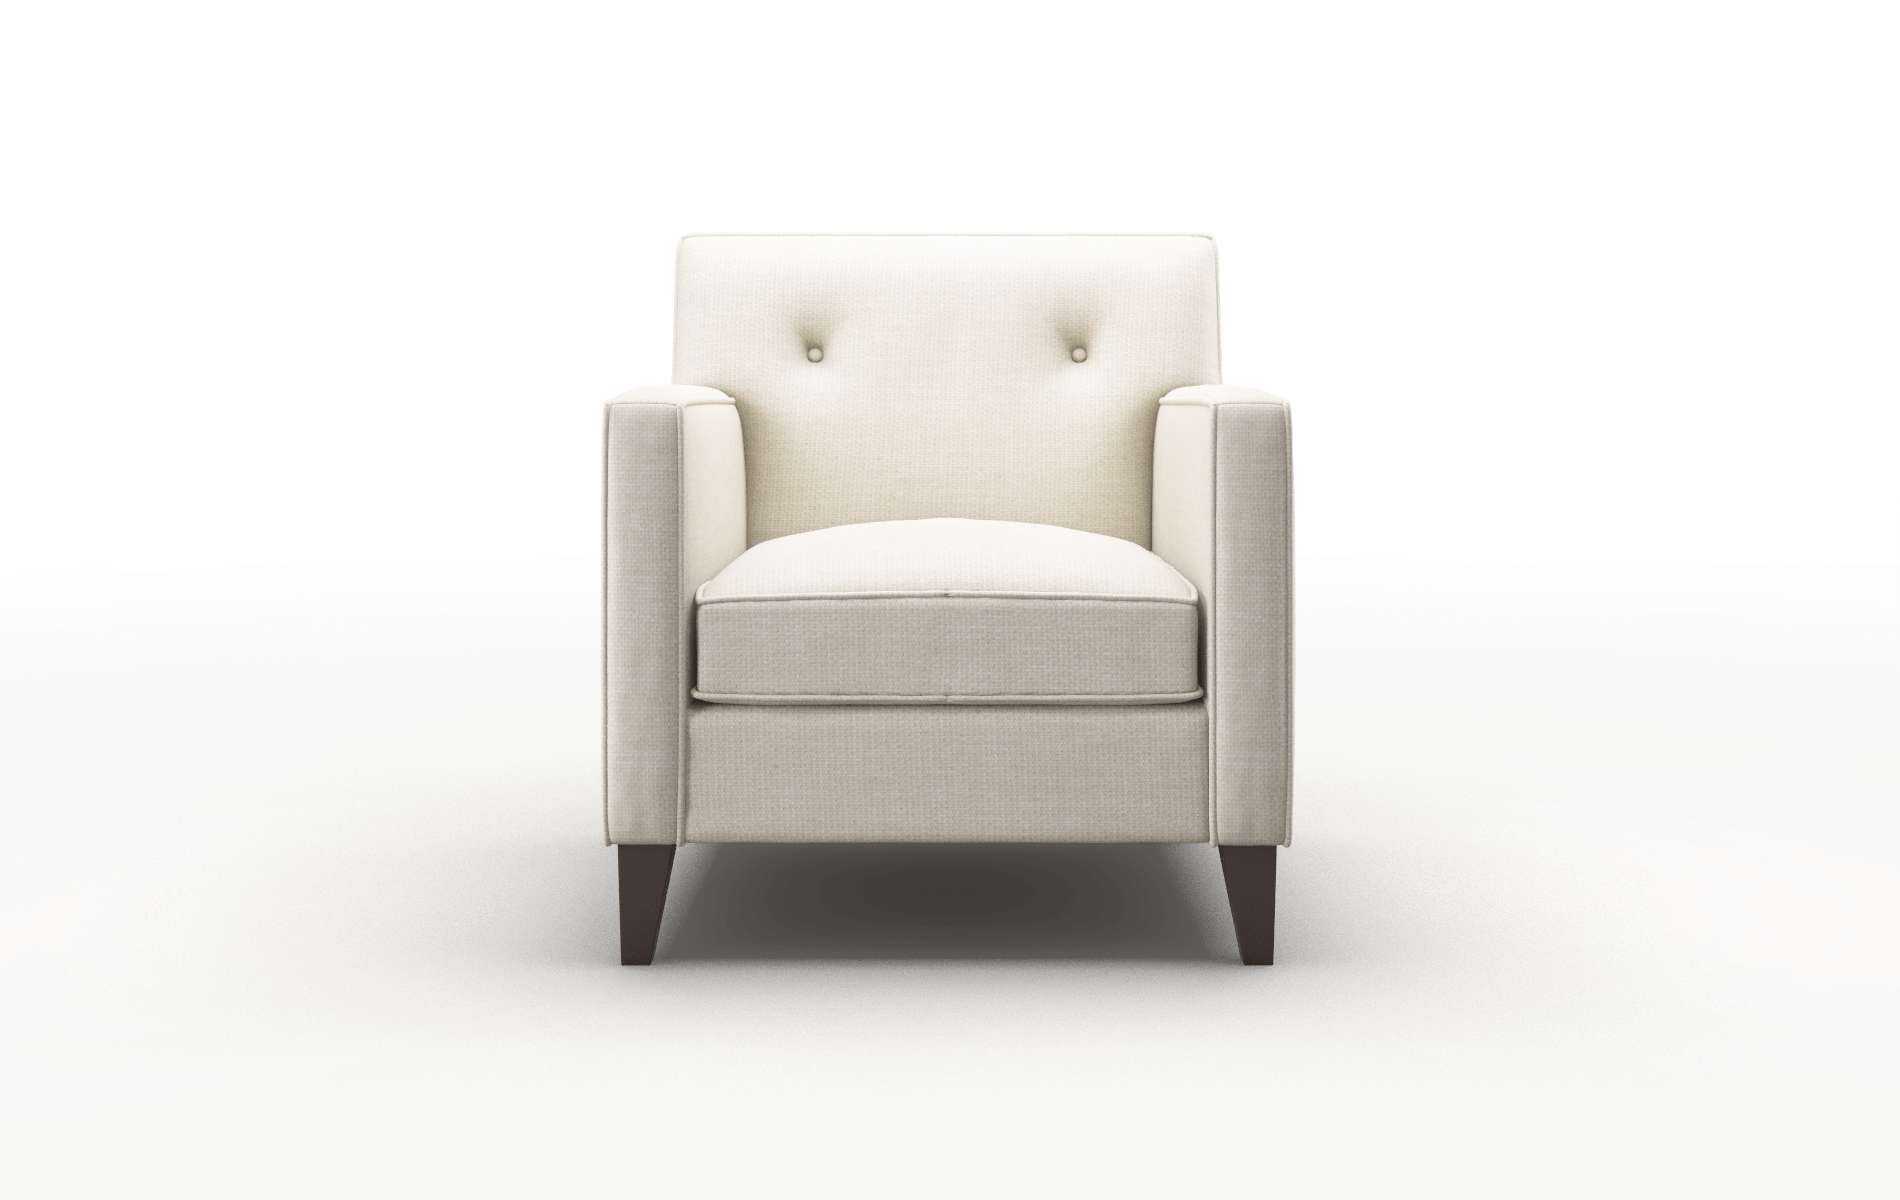 Harper Keylargo Almond Chair espresso legs 1